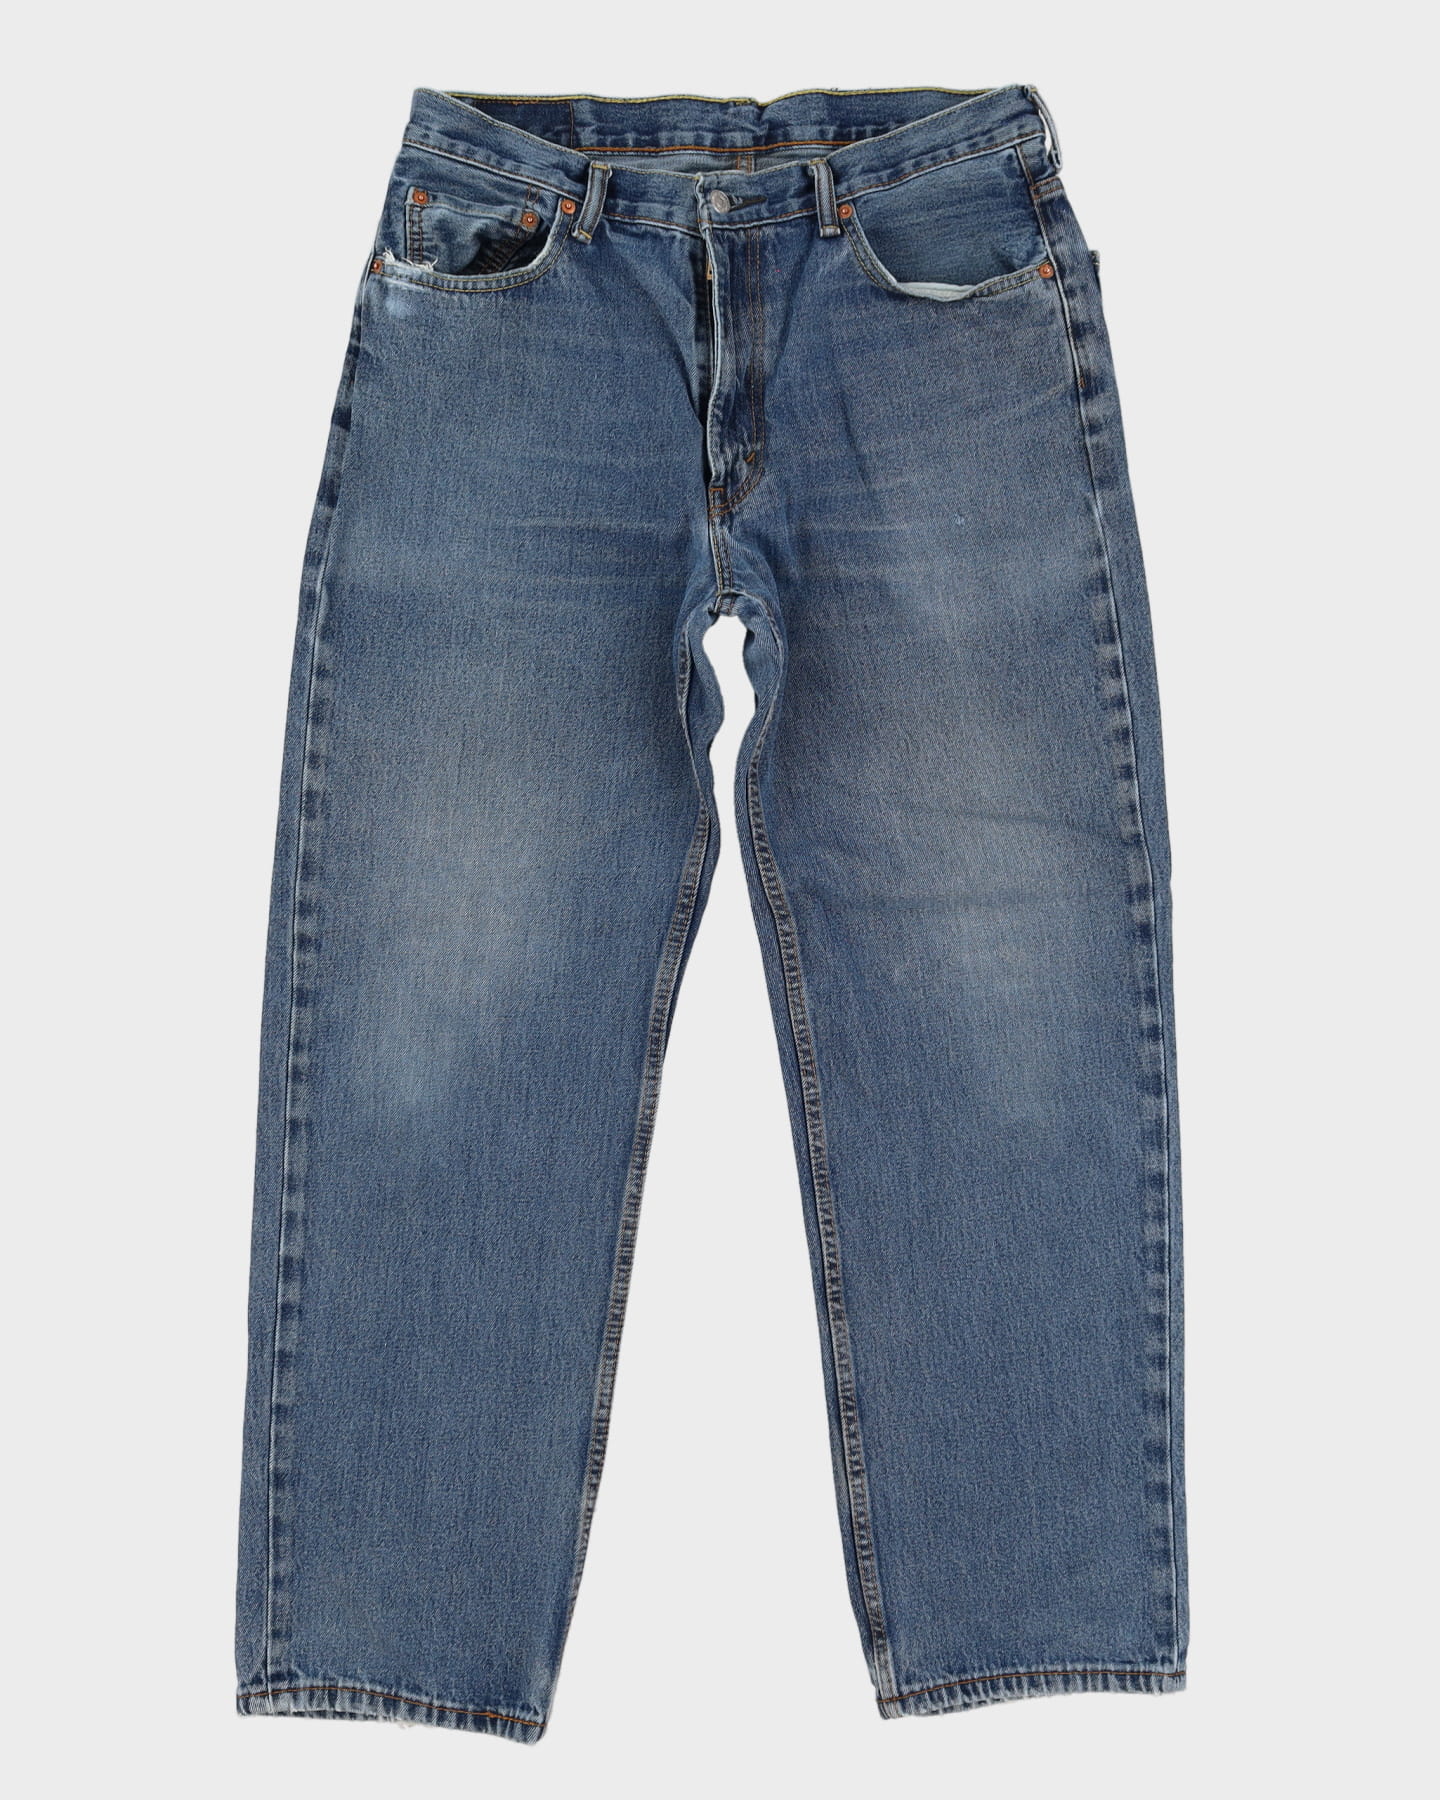 Levi's 505 Blue Jeans - W35 L31